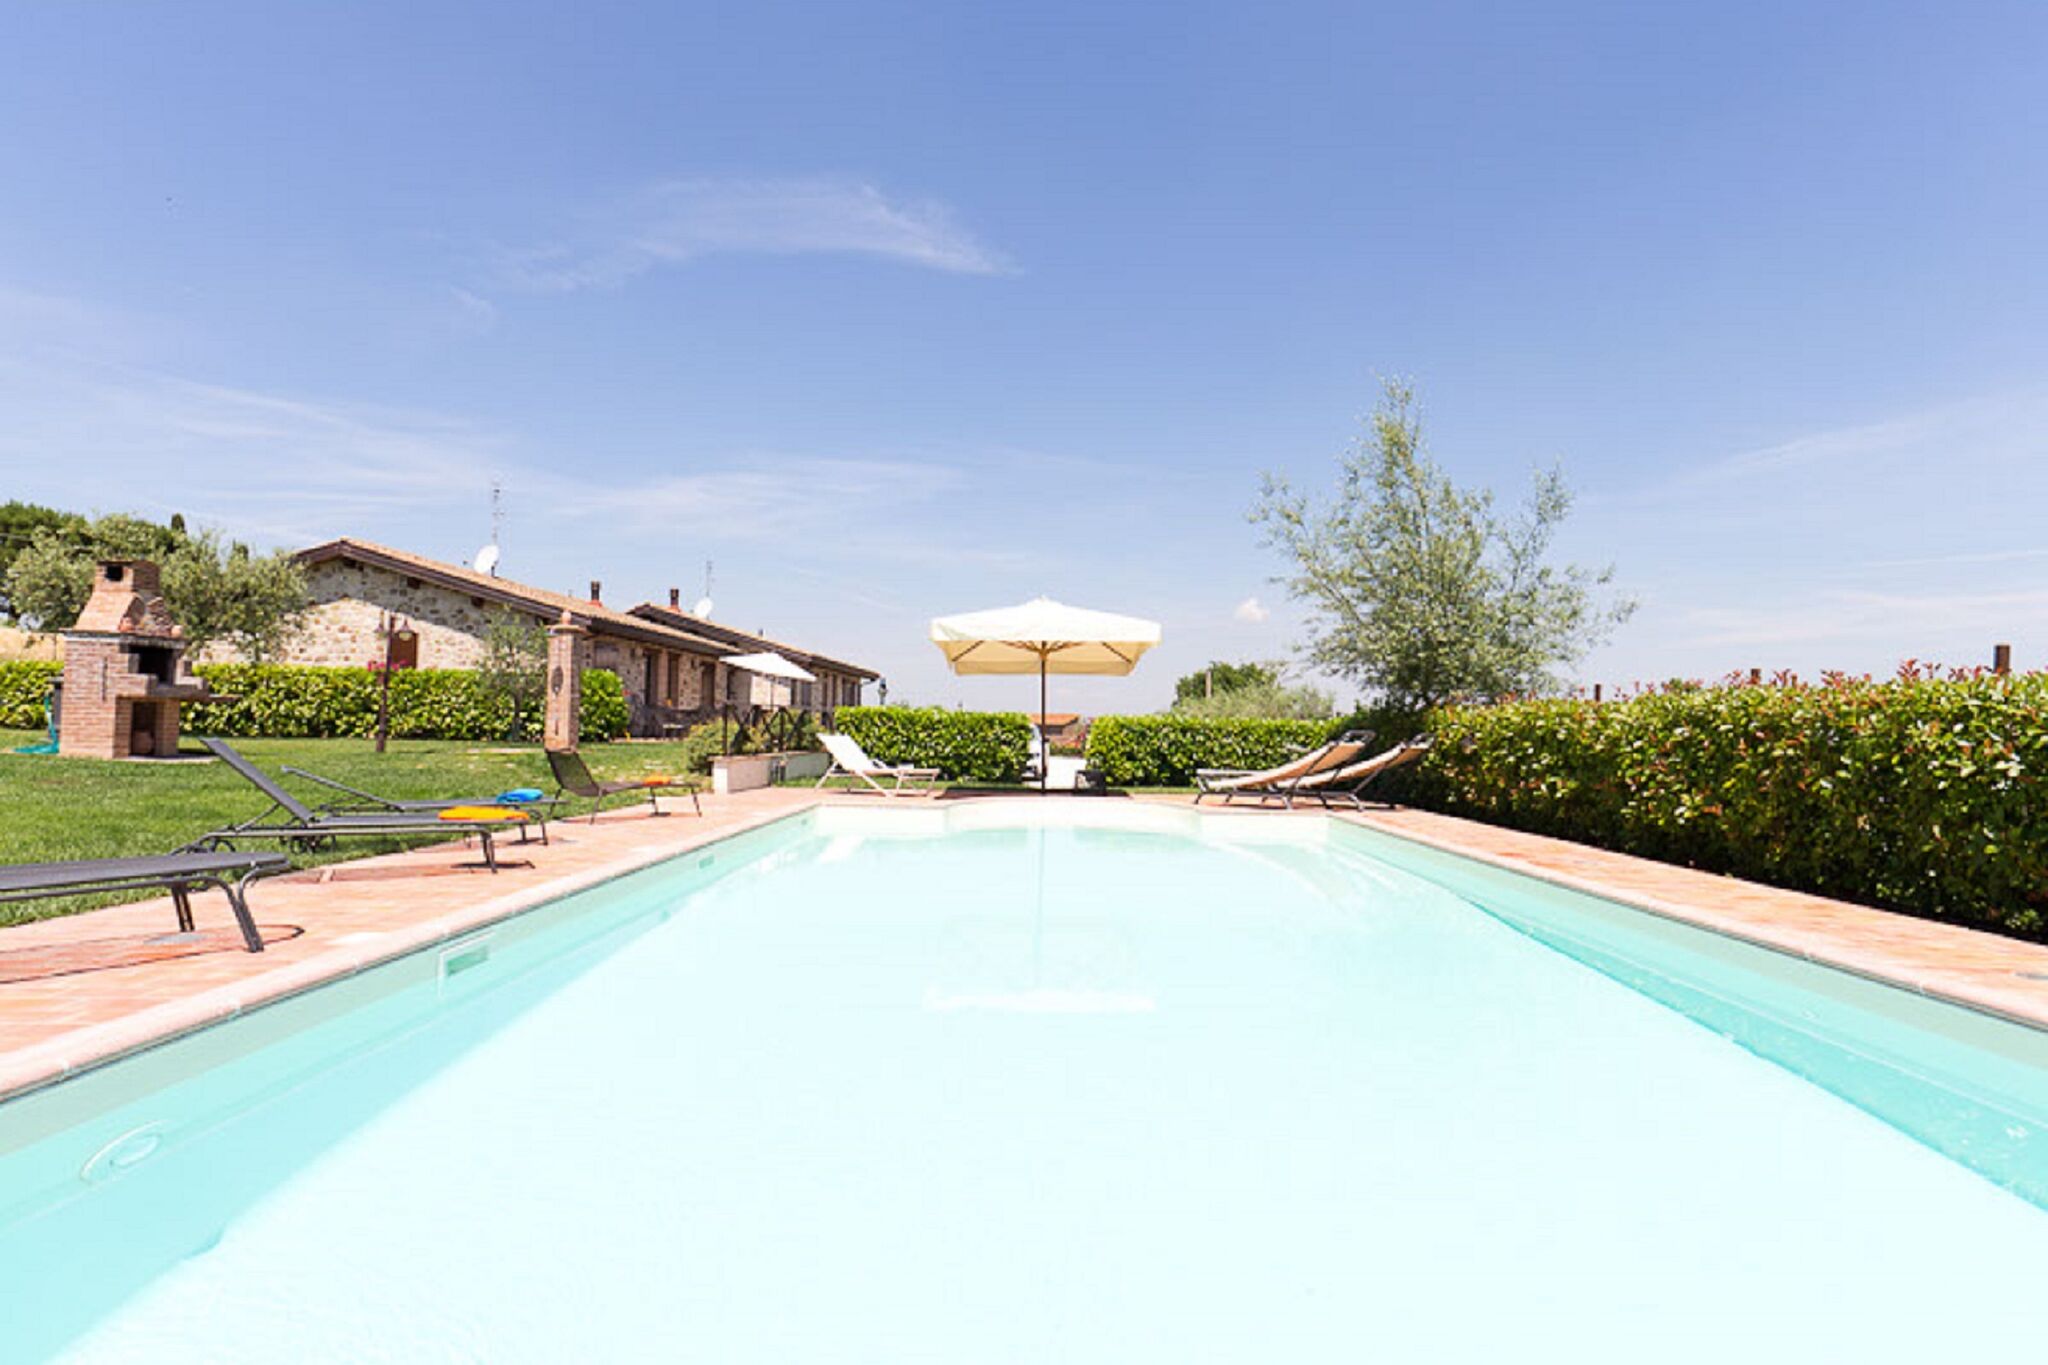 Maison de vacances haut de gamme à Marsciano avec piscine